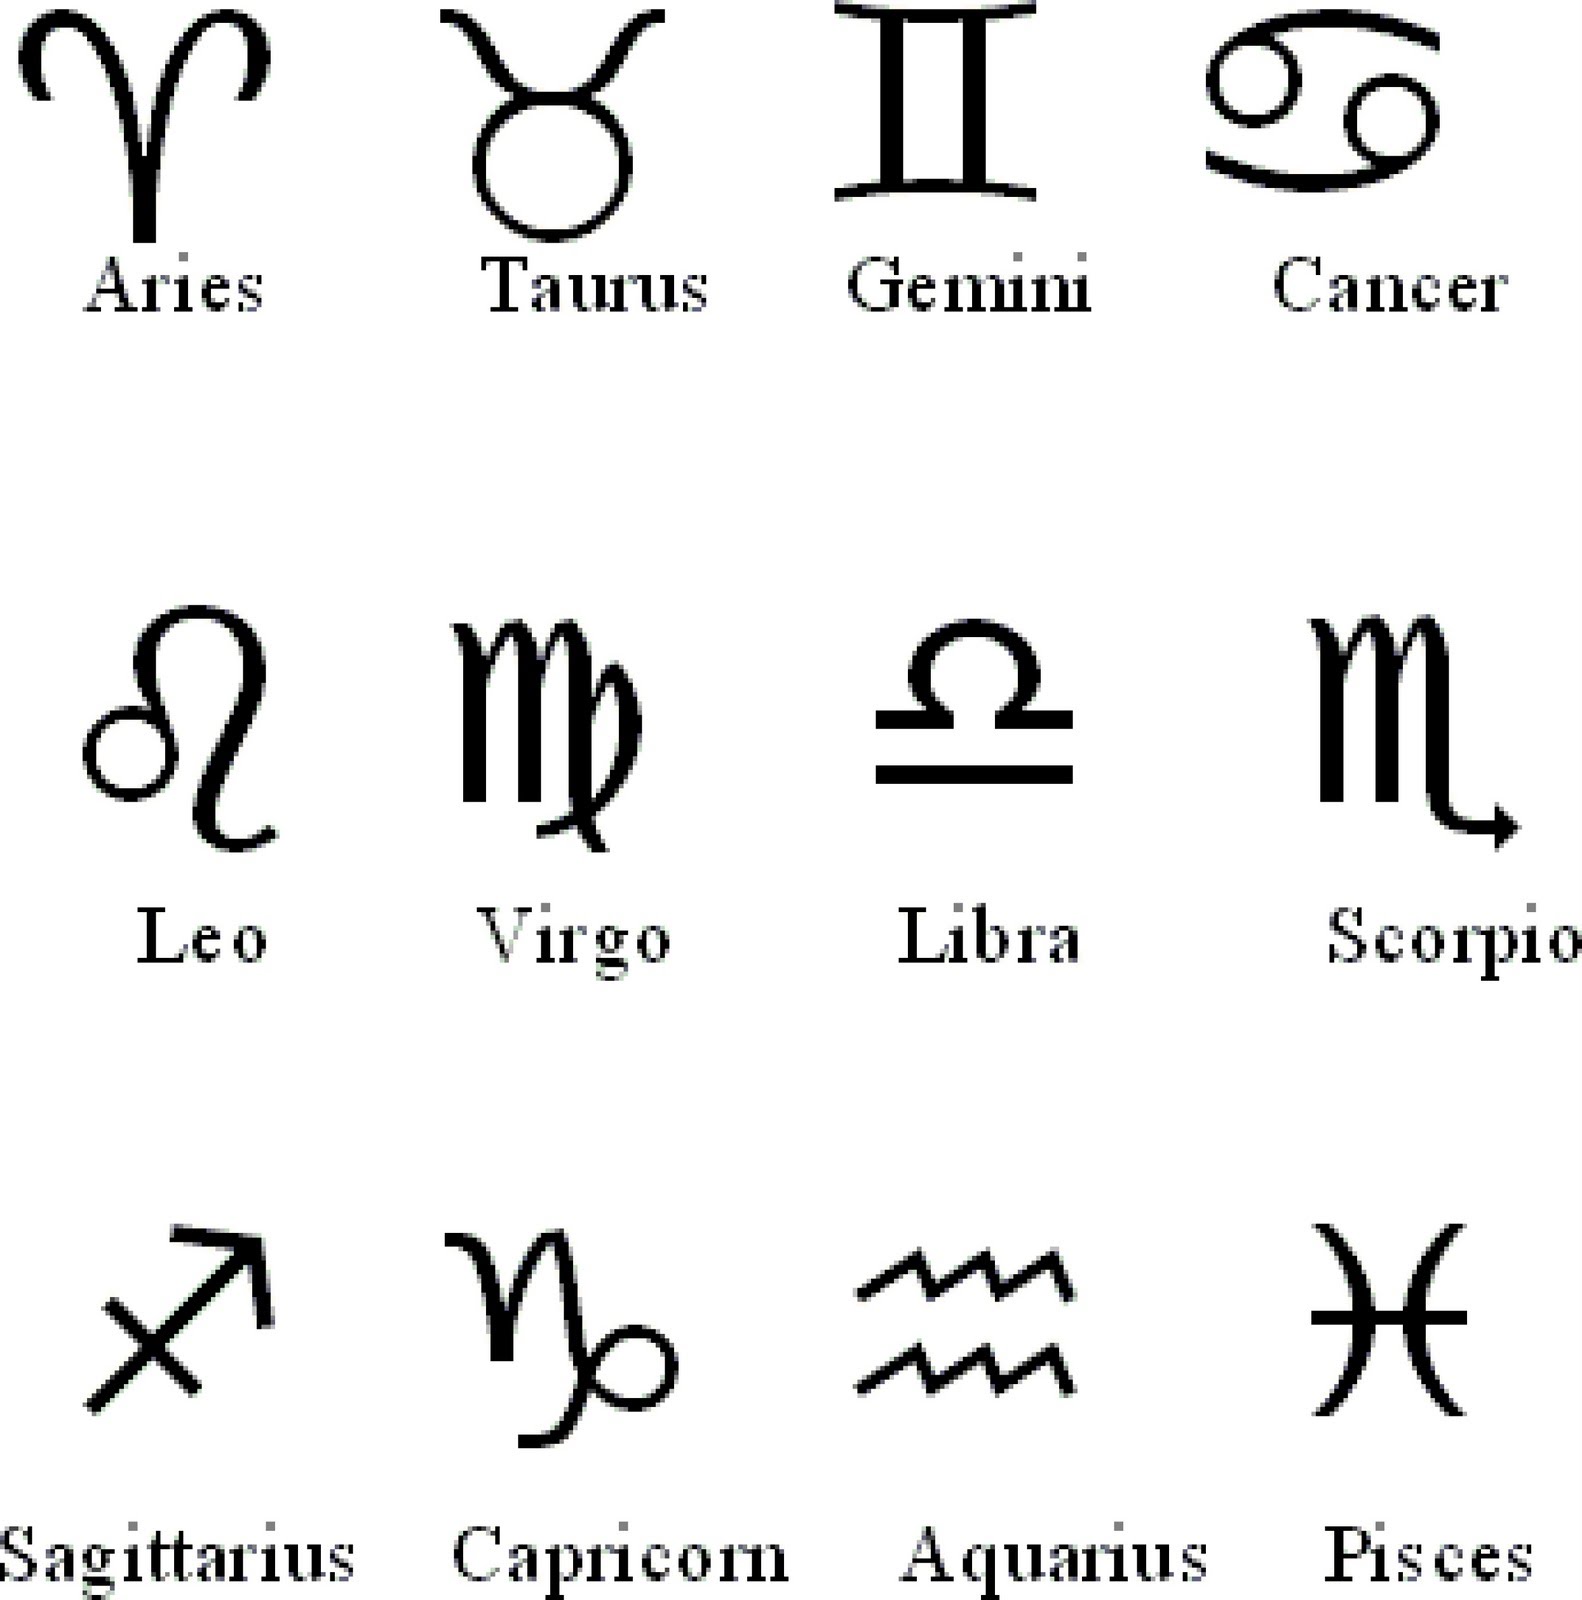 Lauren Jauregui Zodiacs - Your Zodiac Sign - Wattpad